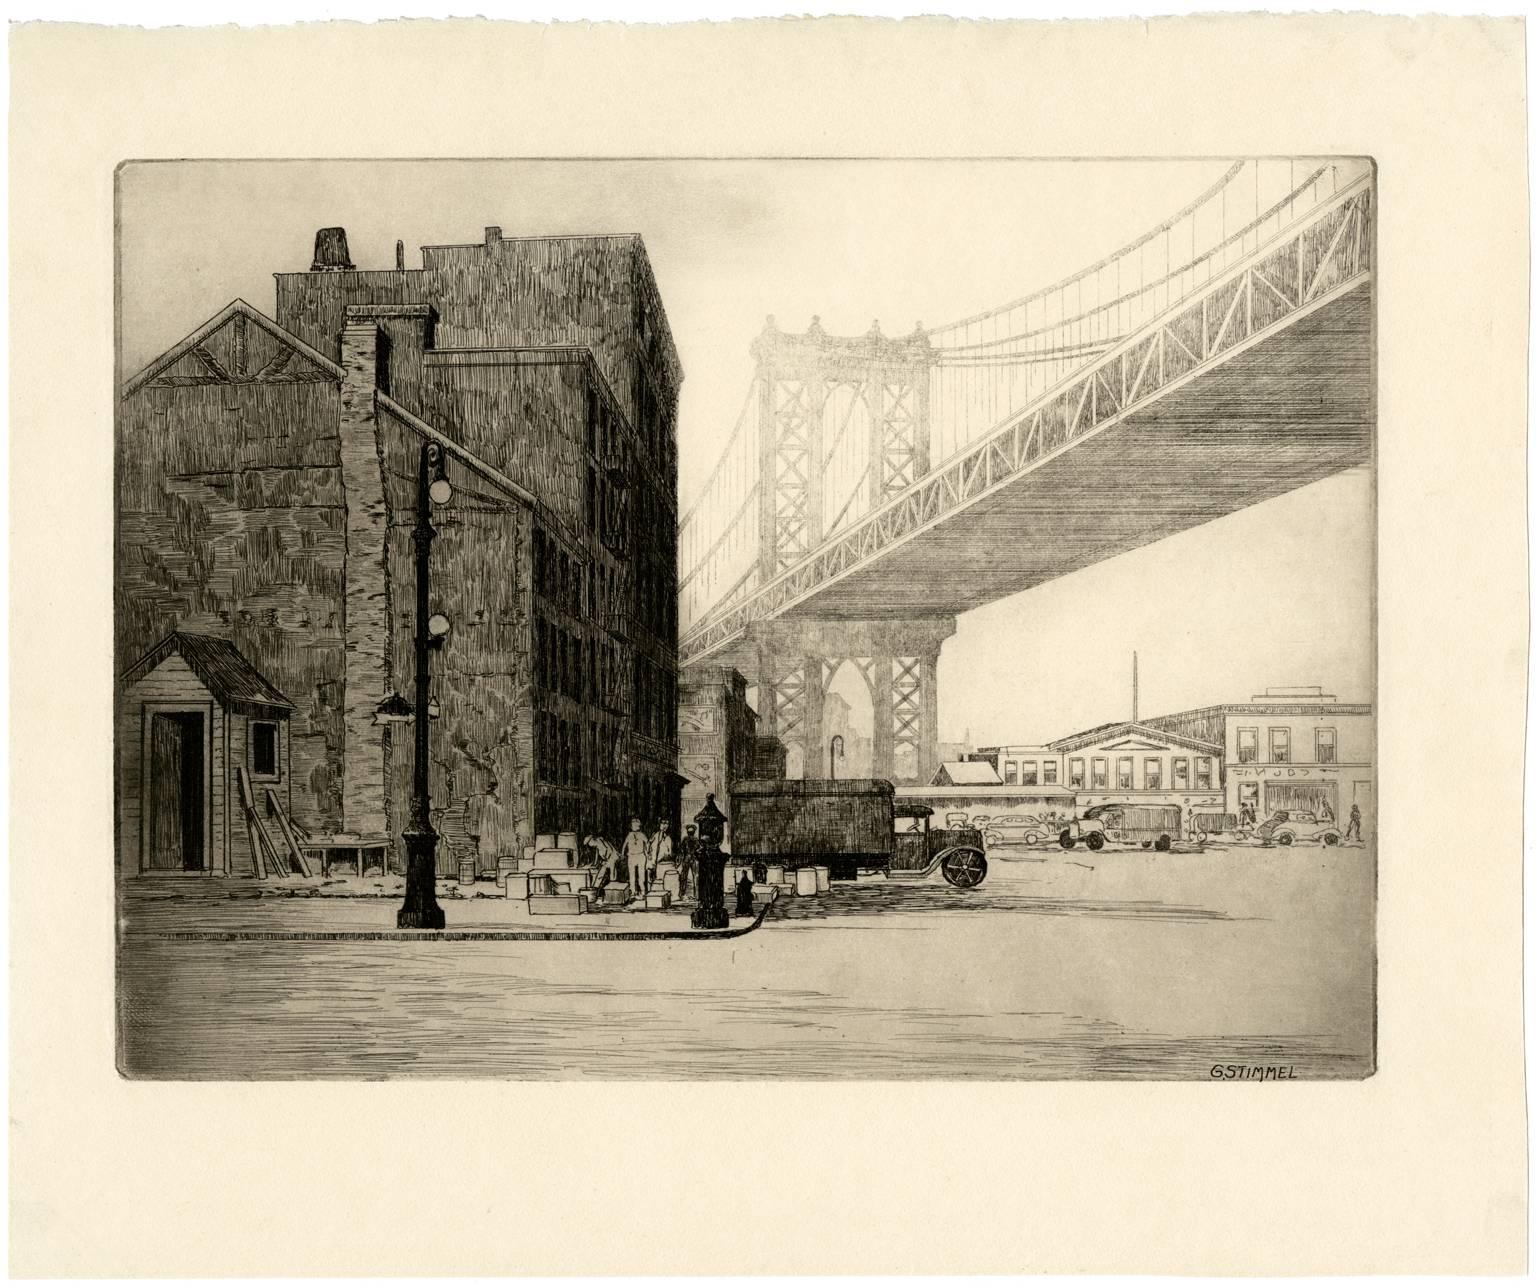 Manhattan Bridge - Print by George Stimmel